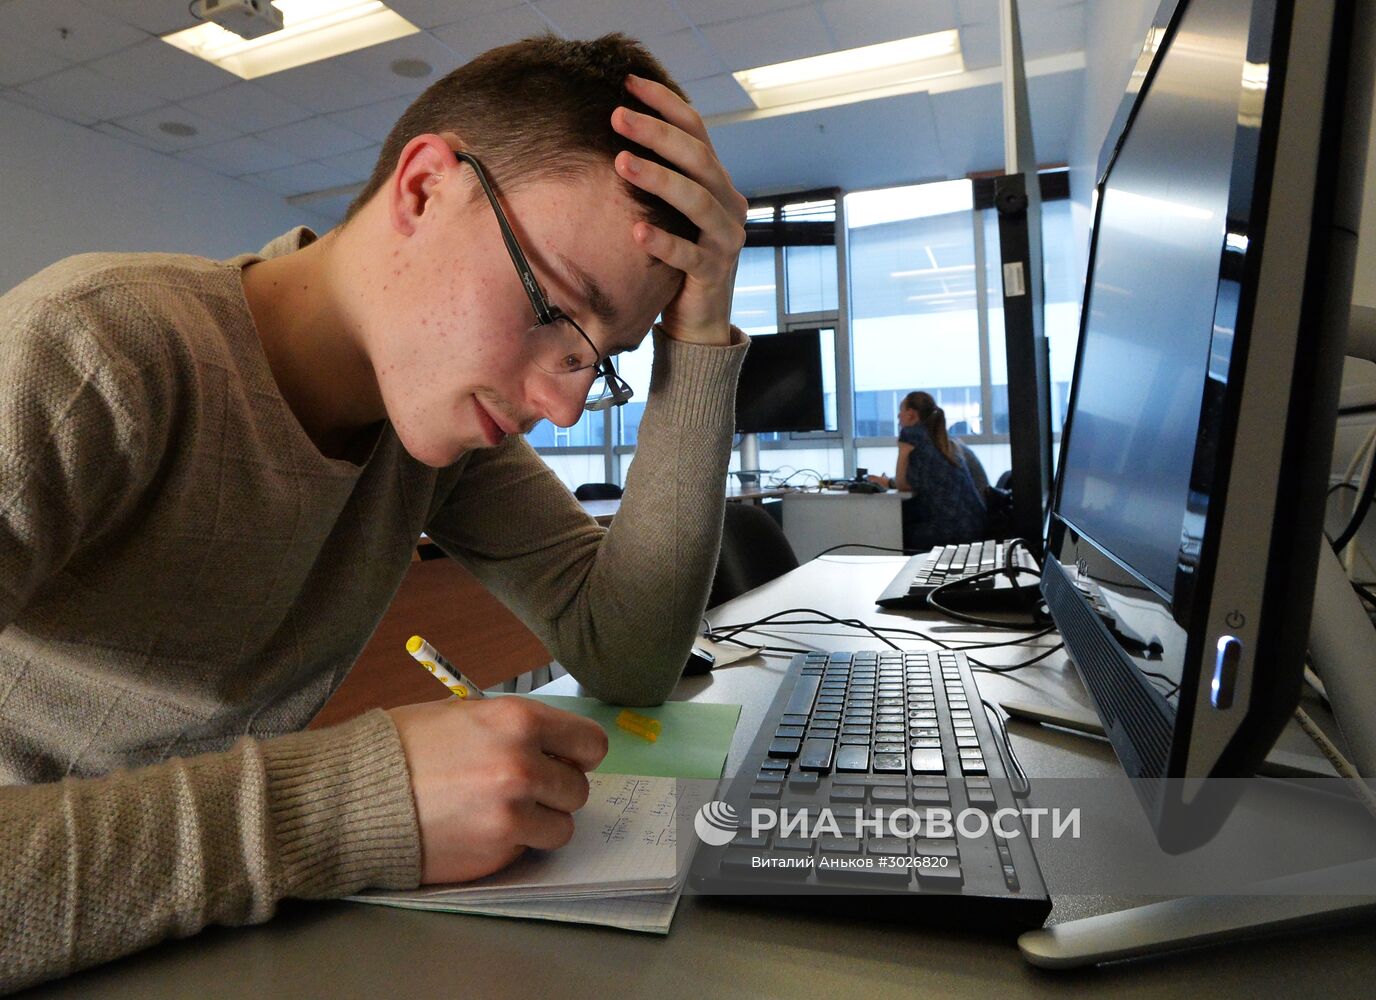 Всероссийская физико-техническая контрольная "Выходи решать!" во Владивостоке